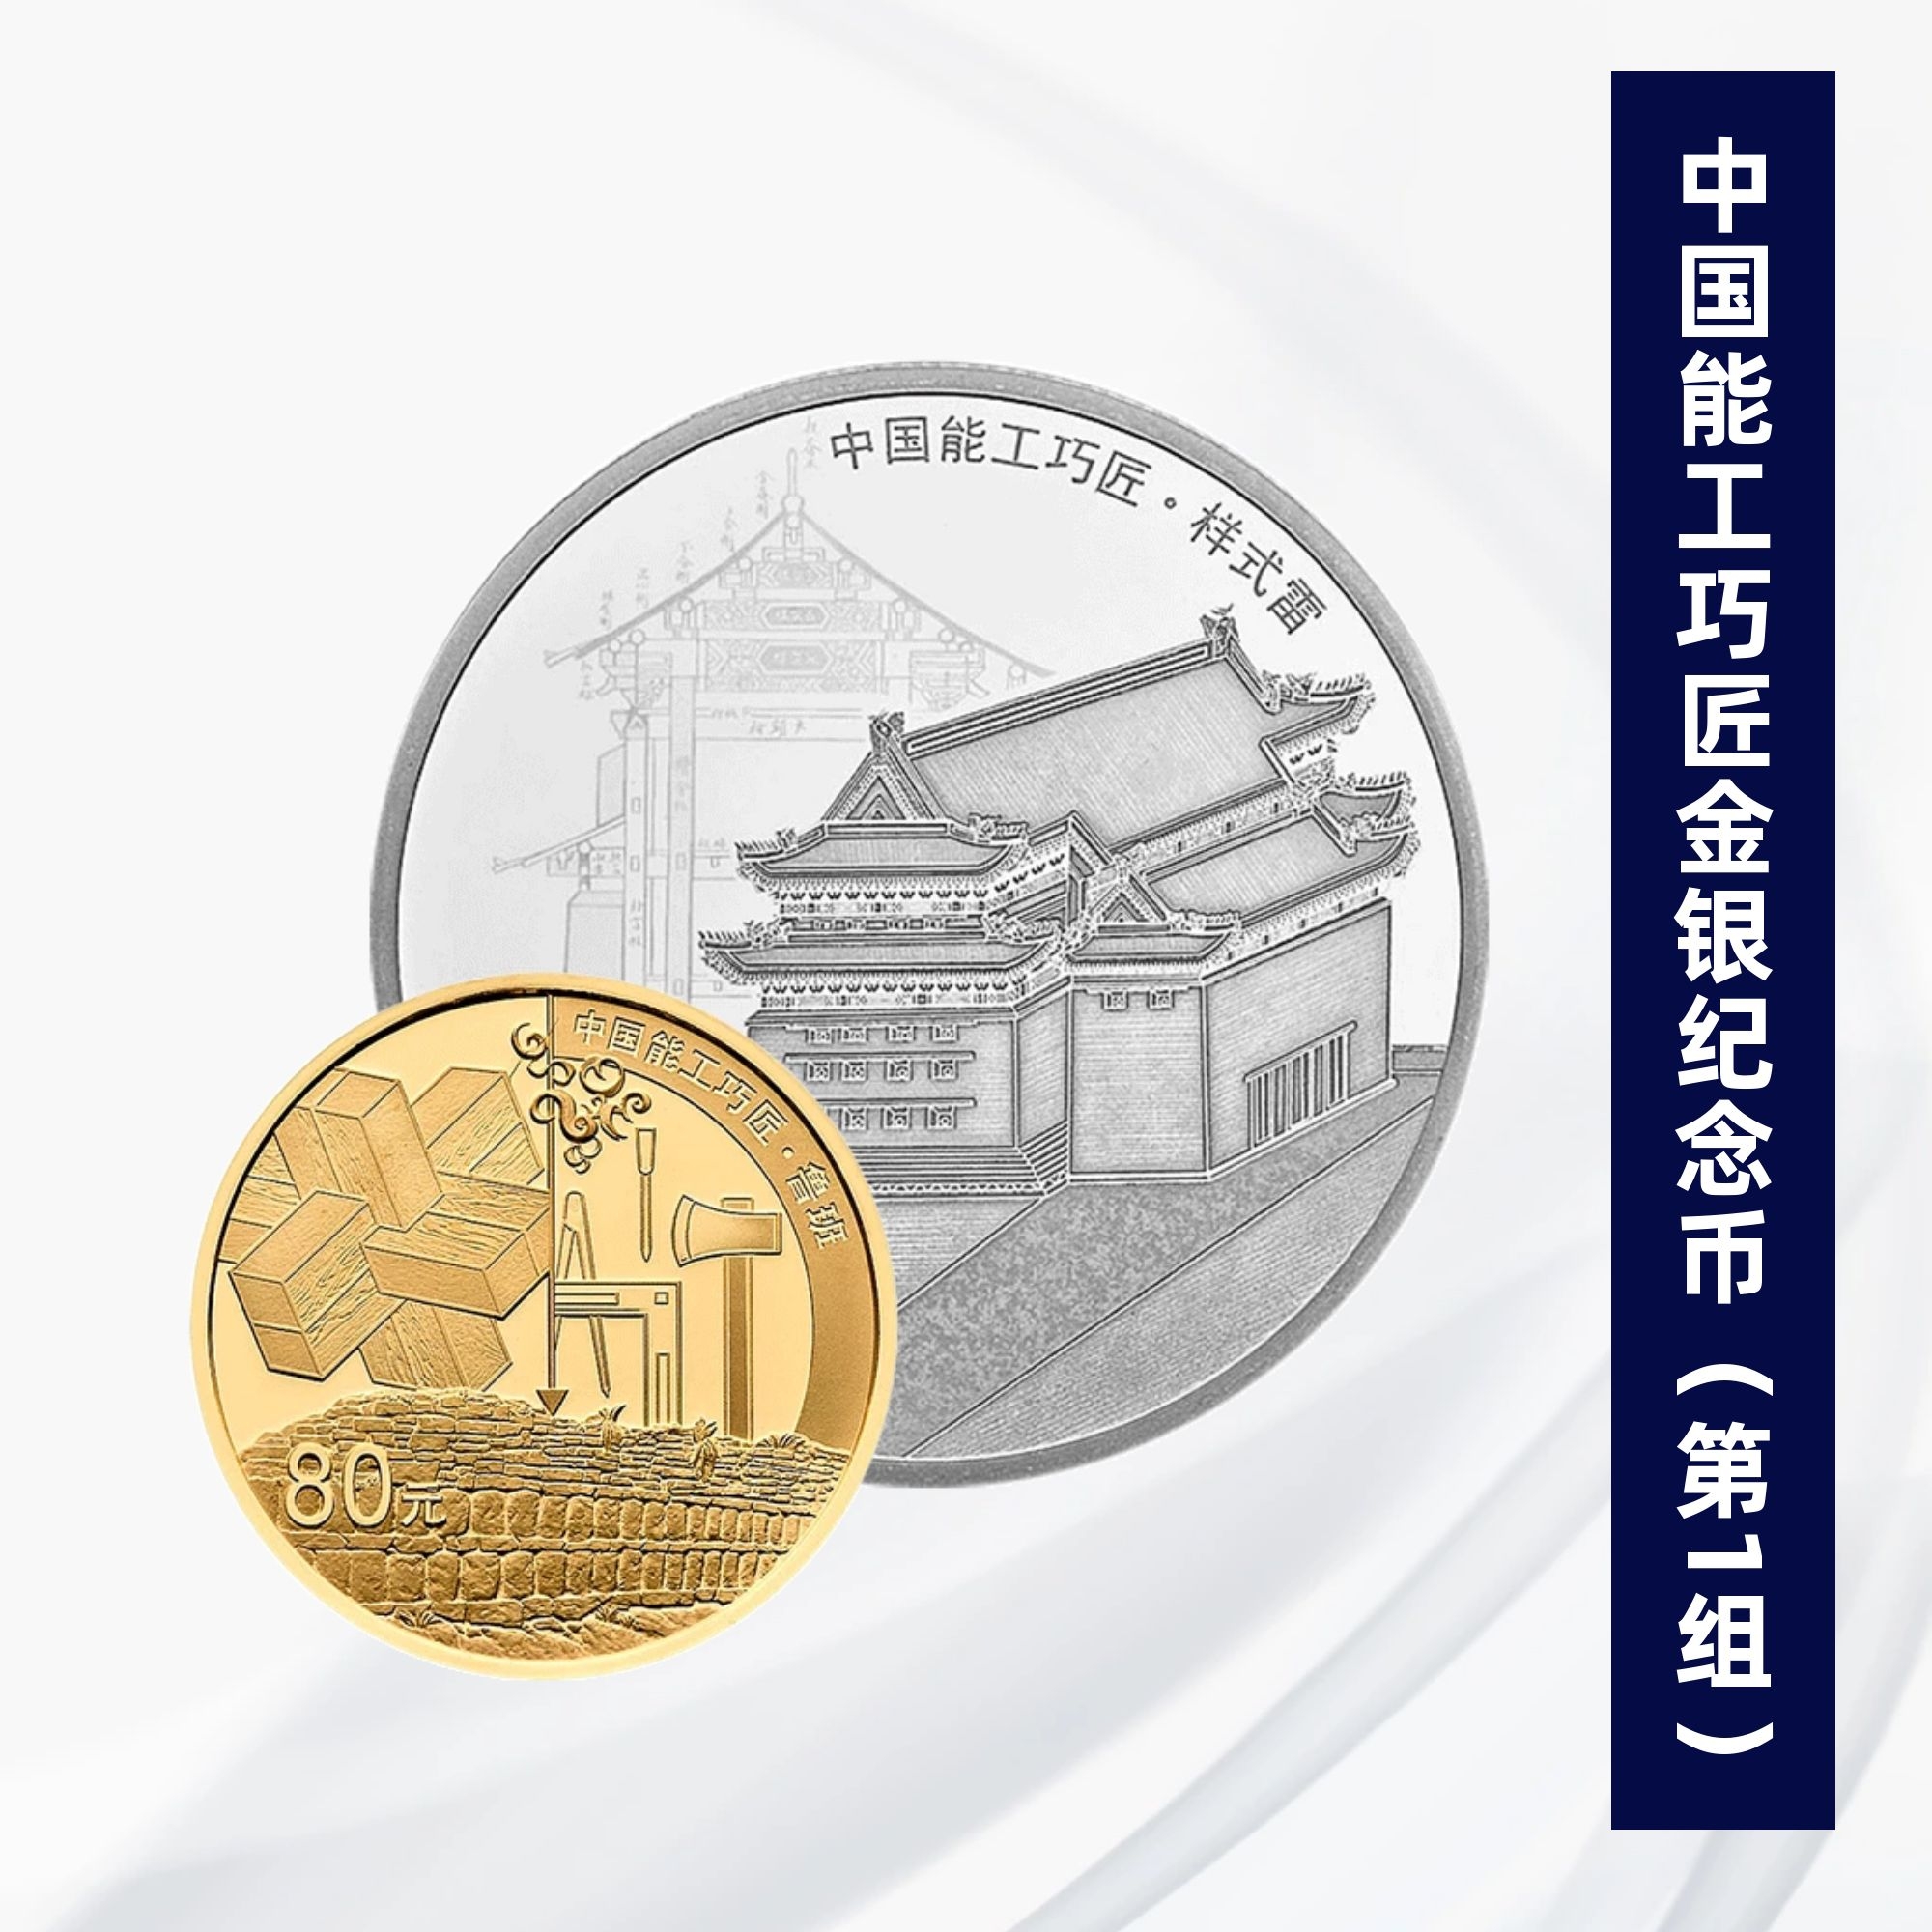 2018年中国能工巧匠(第1组)金银纪念币套装